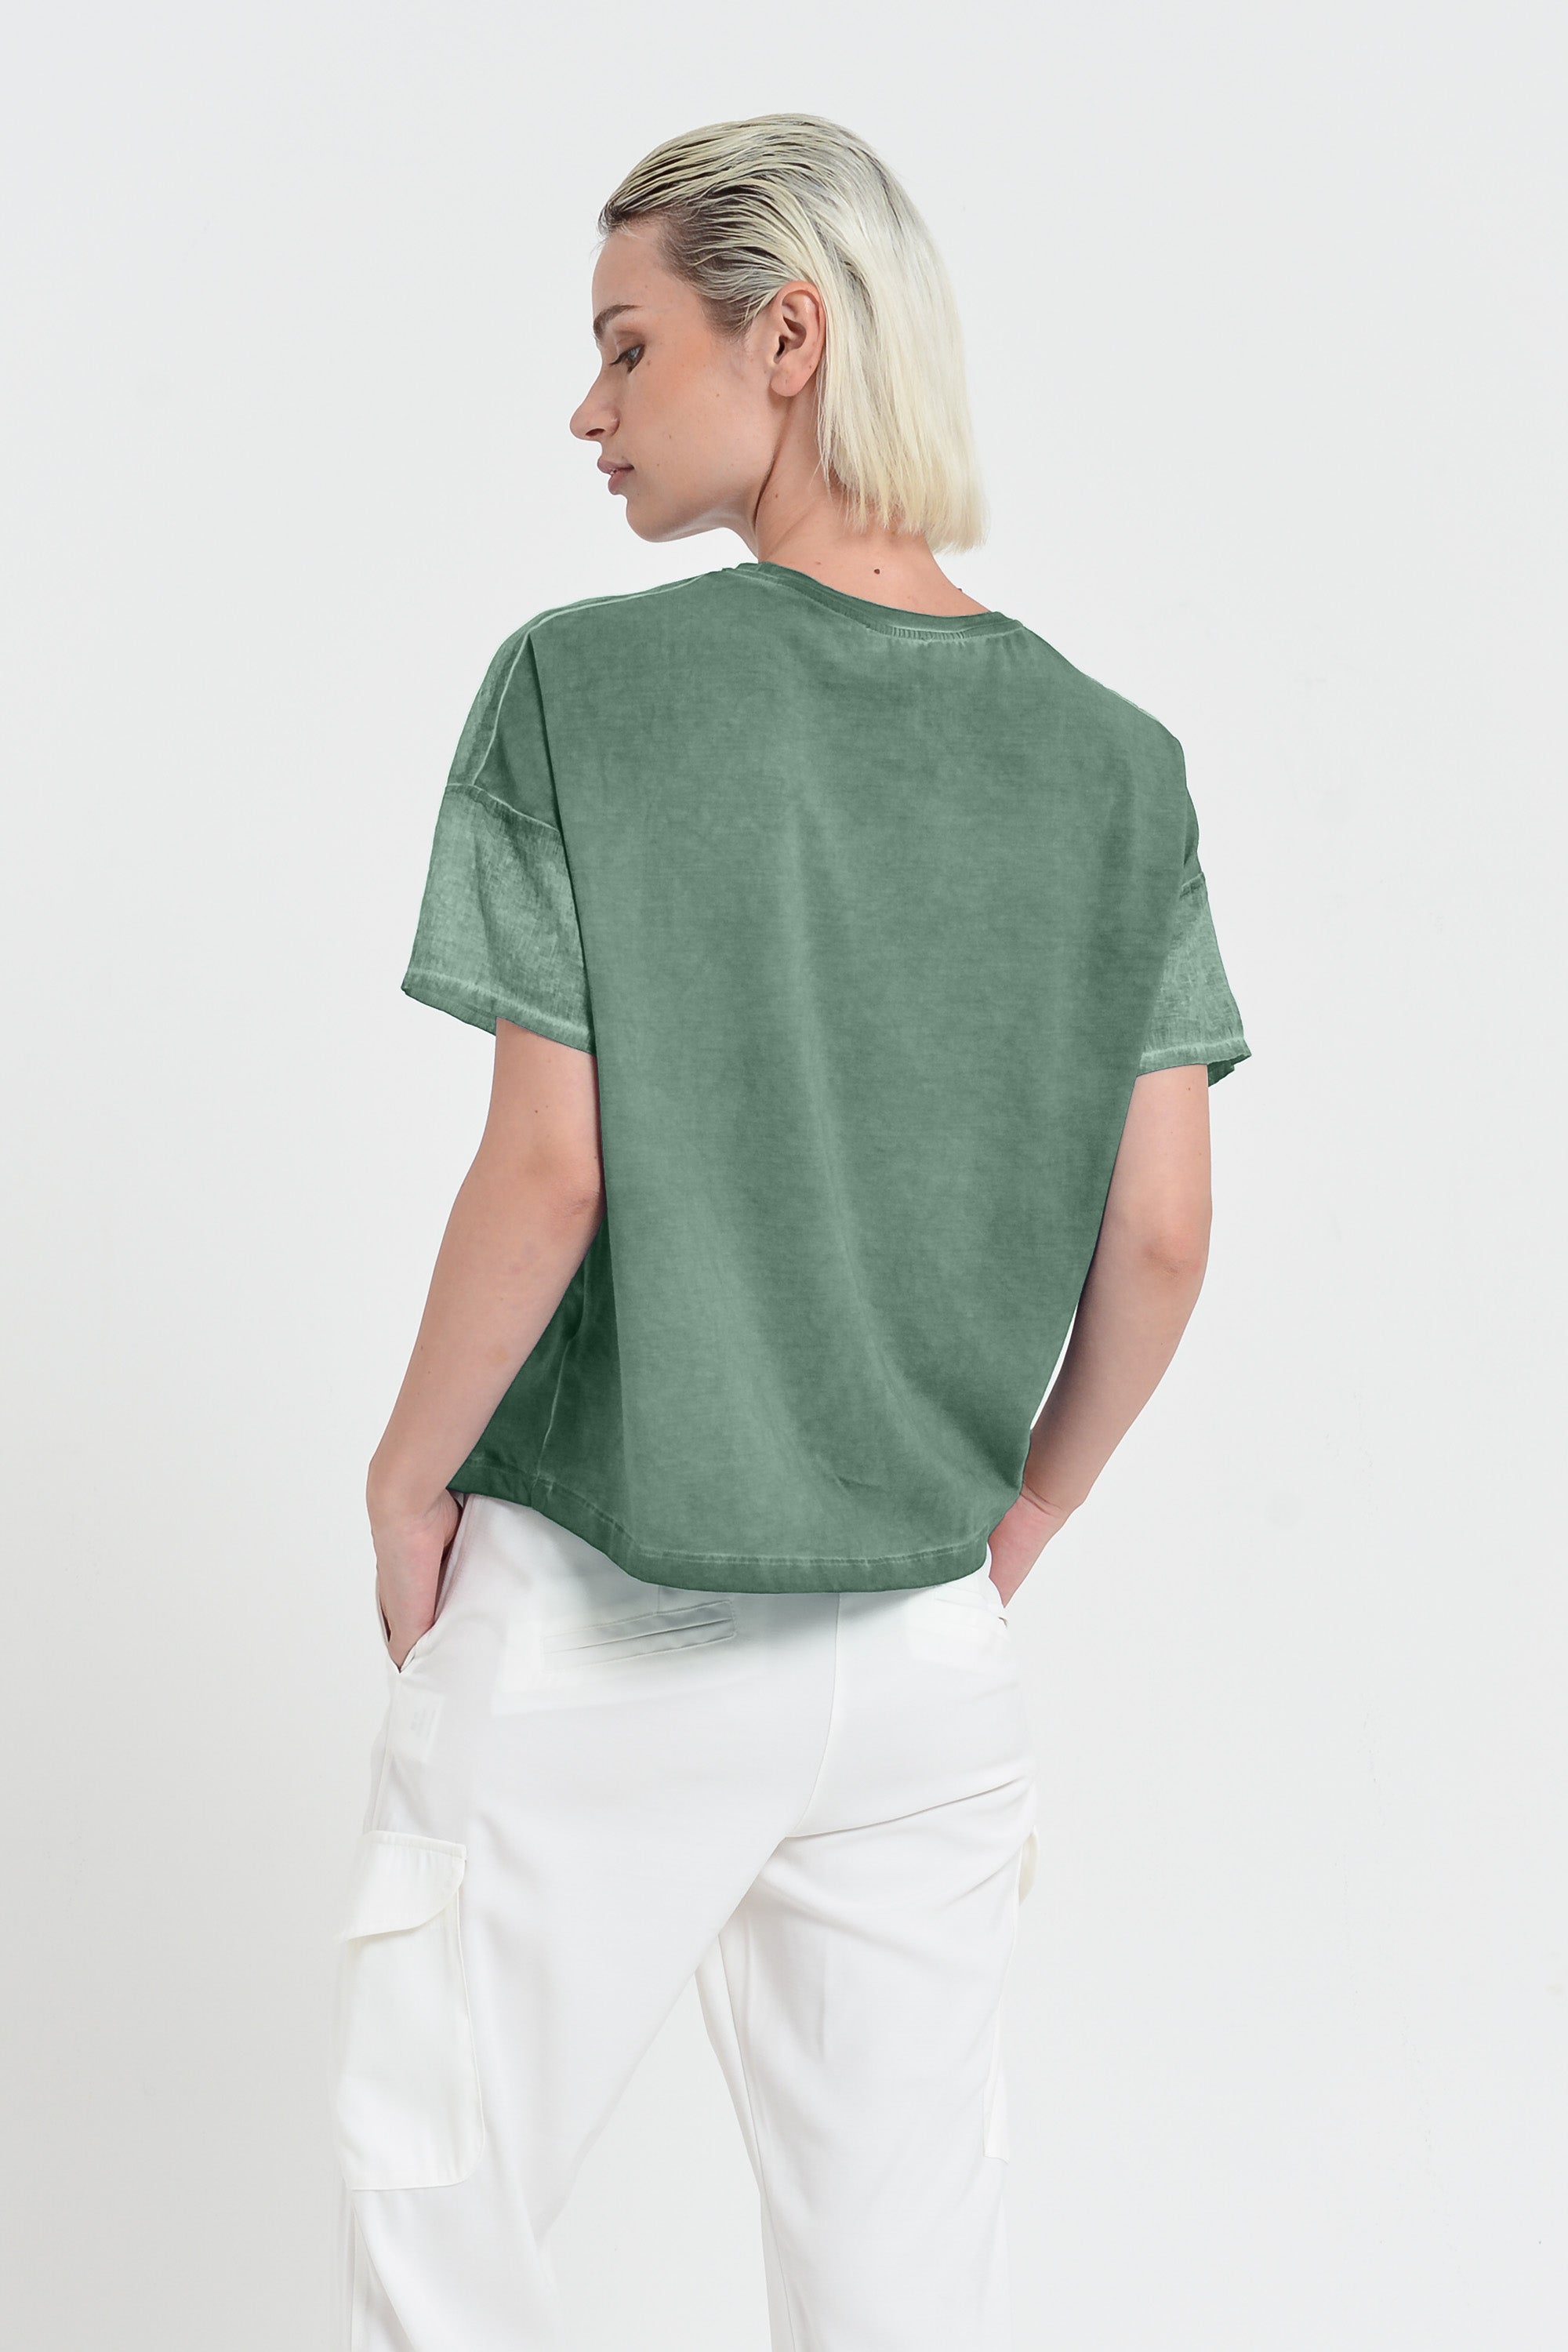 Sunset T-Shirt - Women's Crewneck Cotton T-Shirt - Juniper